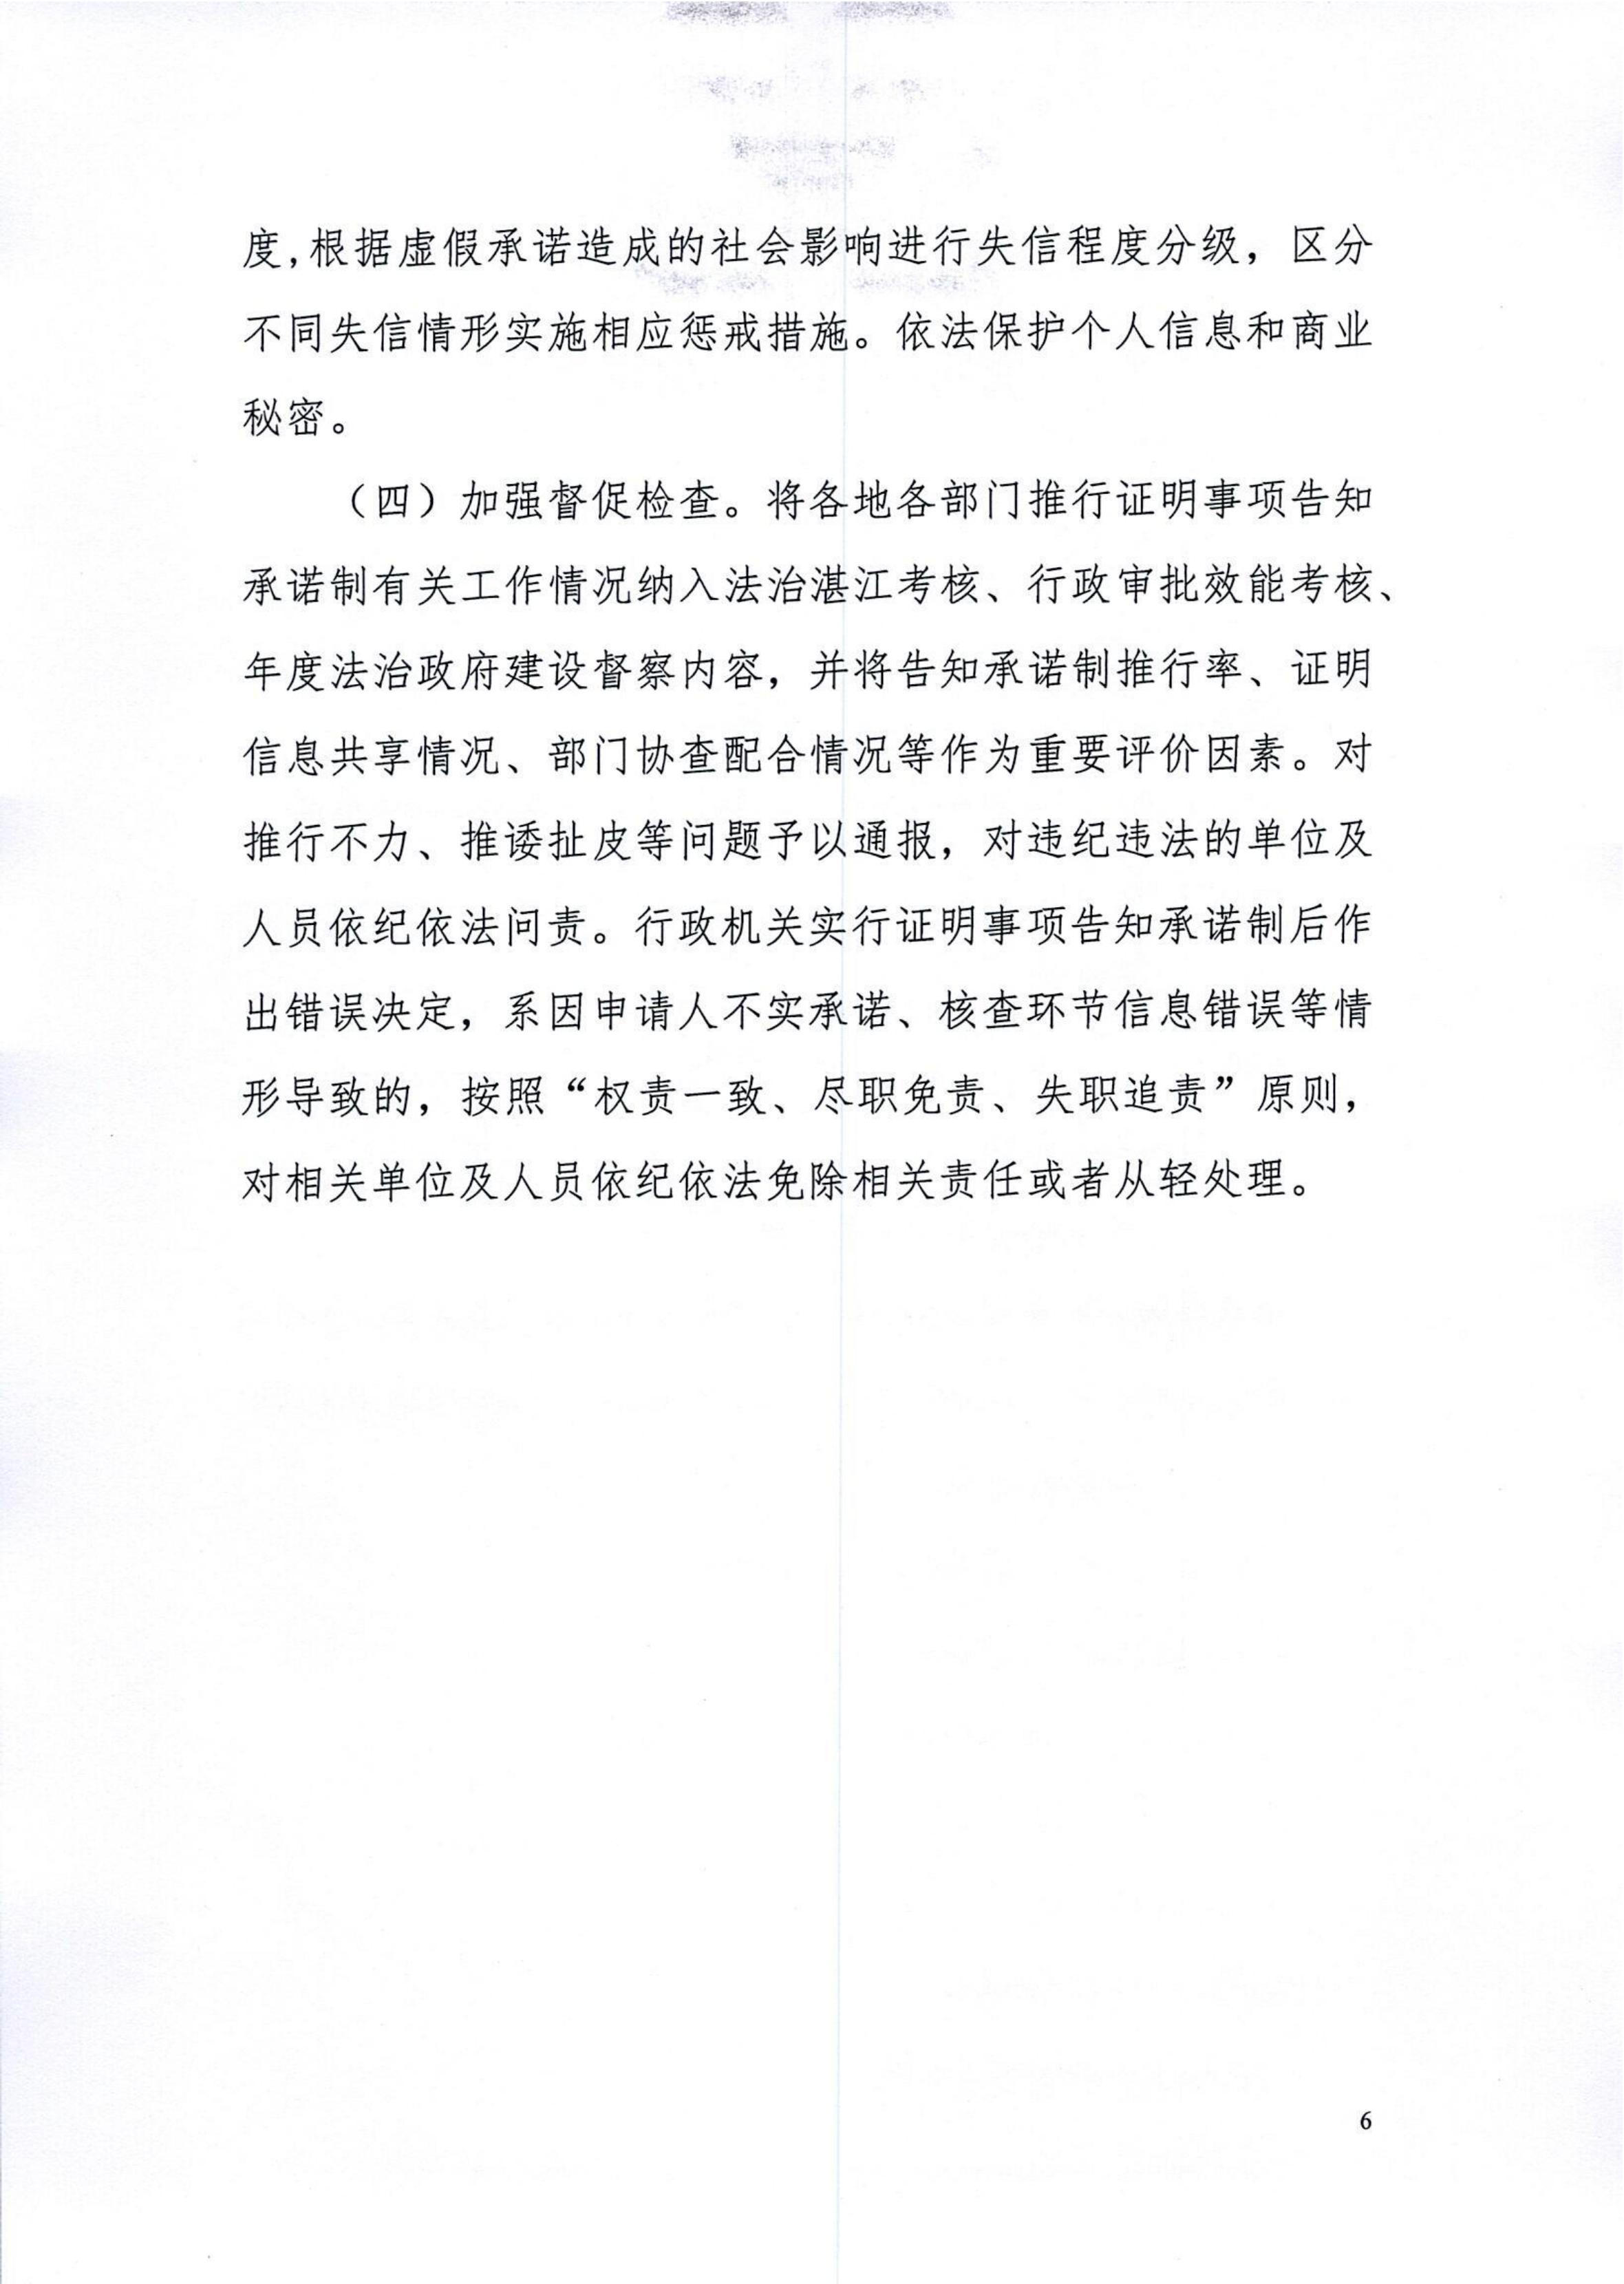 湛江市司法局关于印发湛江市全面推行证明事项告知承诺制工作实施方案的通知_06.jpg